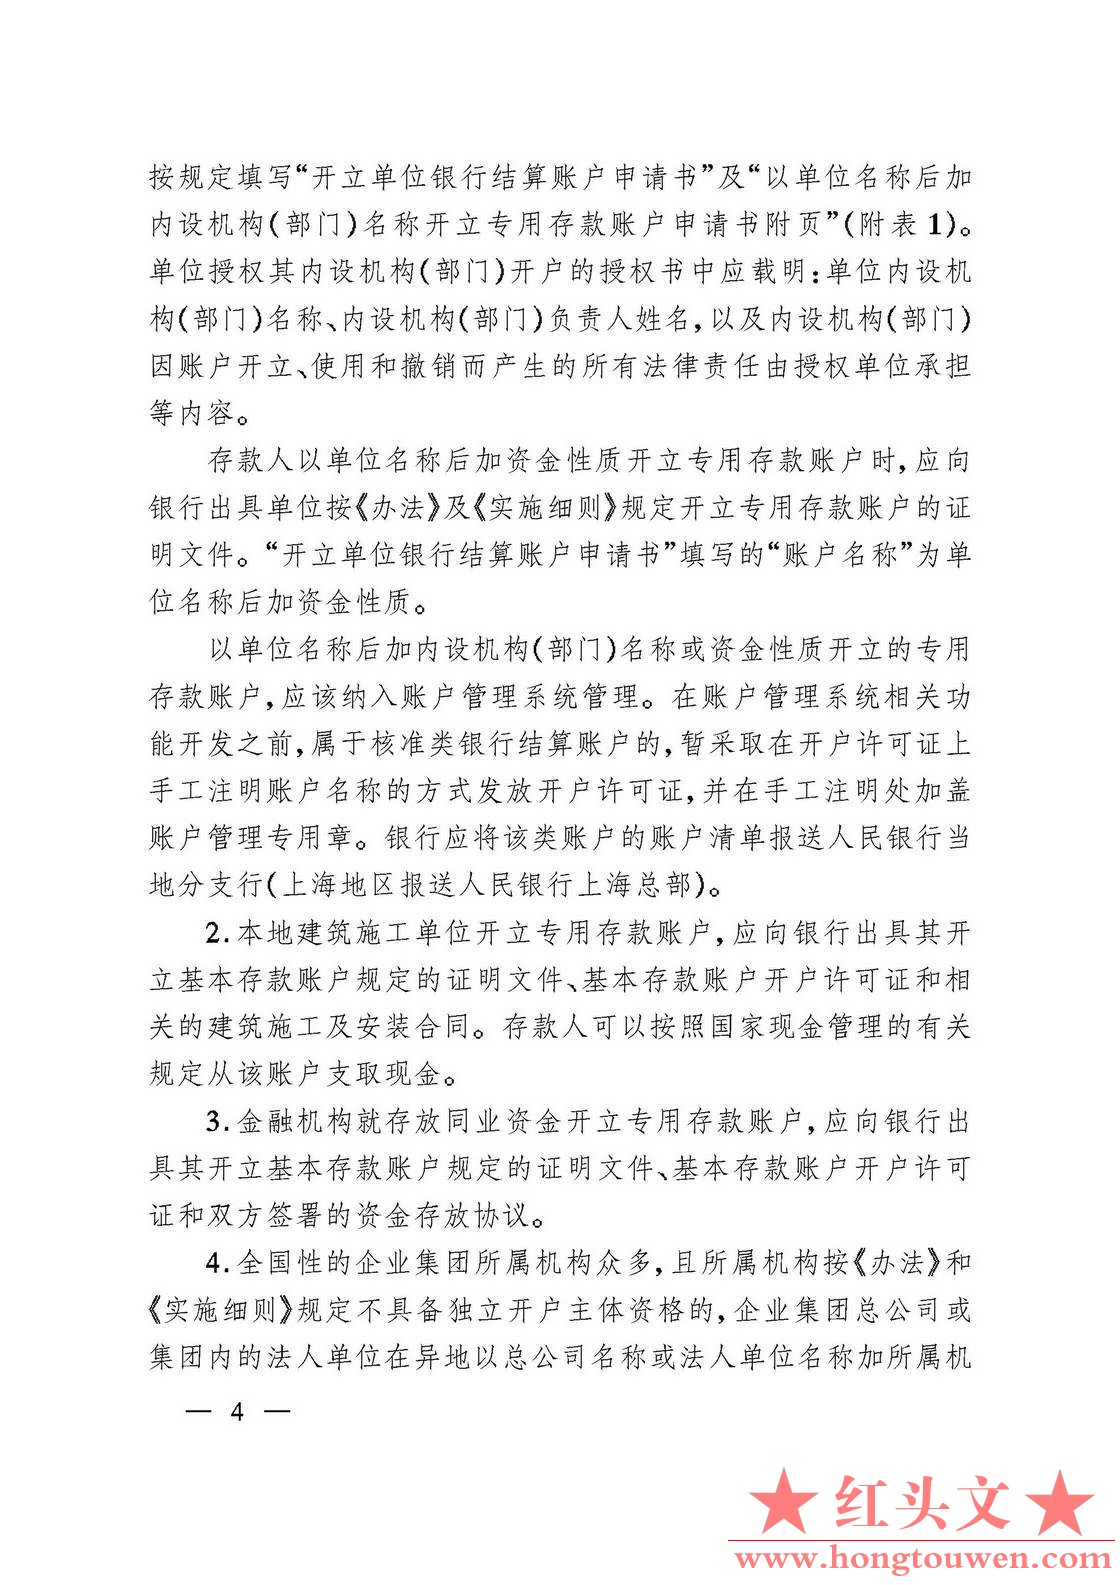 银发[2006]71号-中国人民银行关于规范人民币银行结算账户管理有关问题的通知_页面_04..jpg